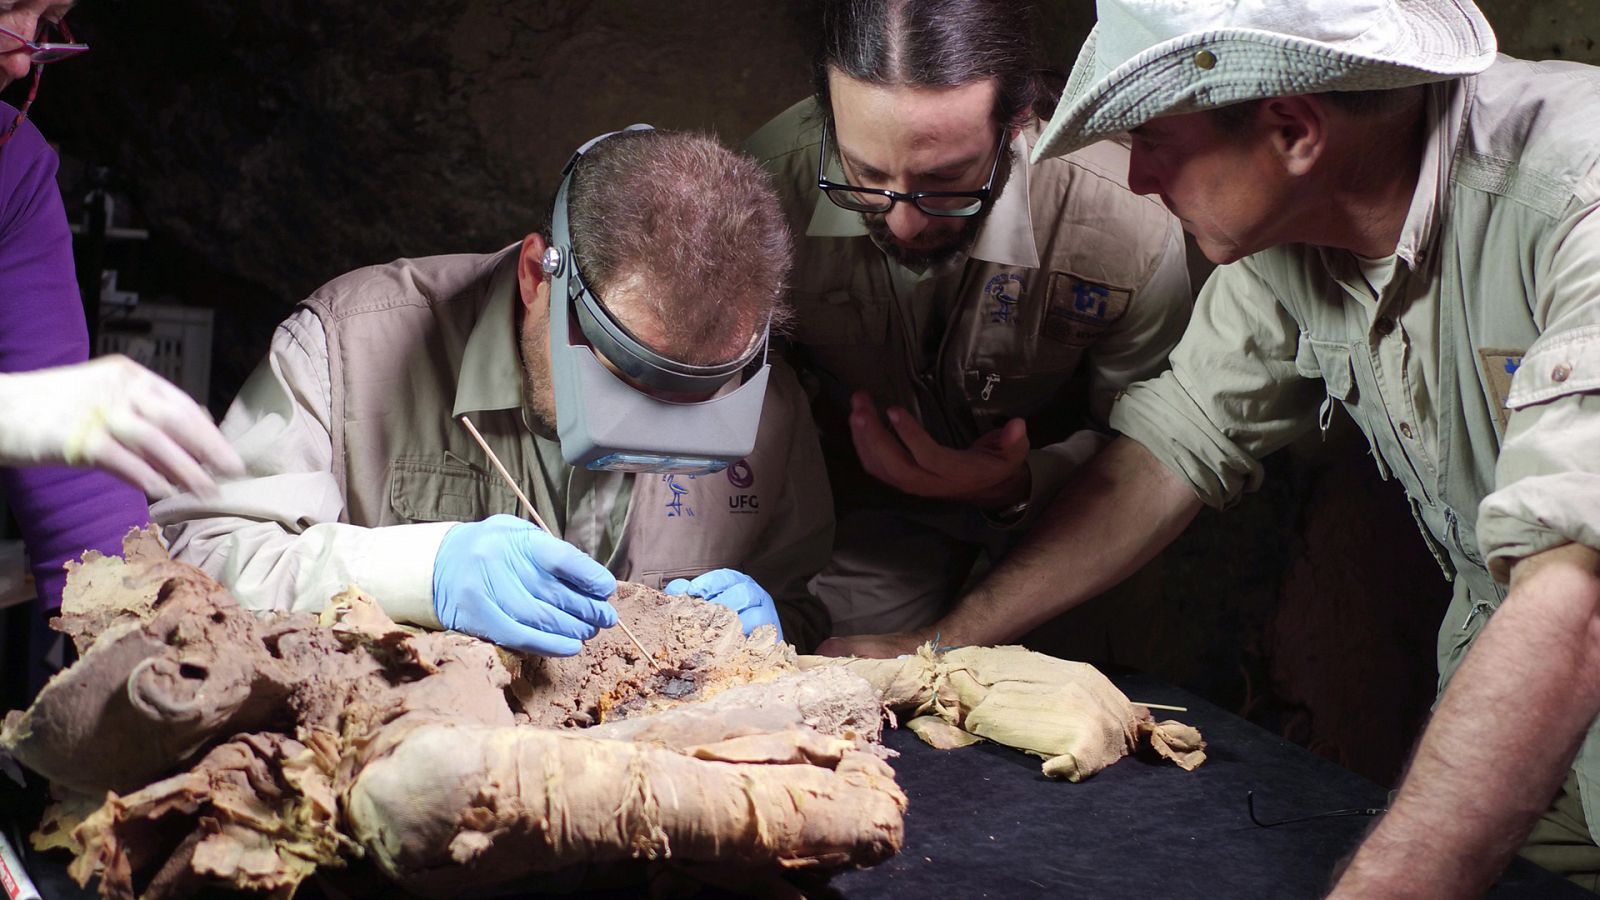 Somos documentales - El sueño de la vida eterna. Entre momias, tumbas y jeroglíficos - Documental en RTVE